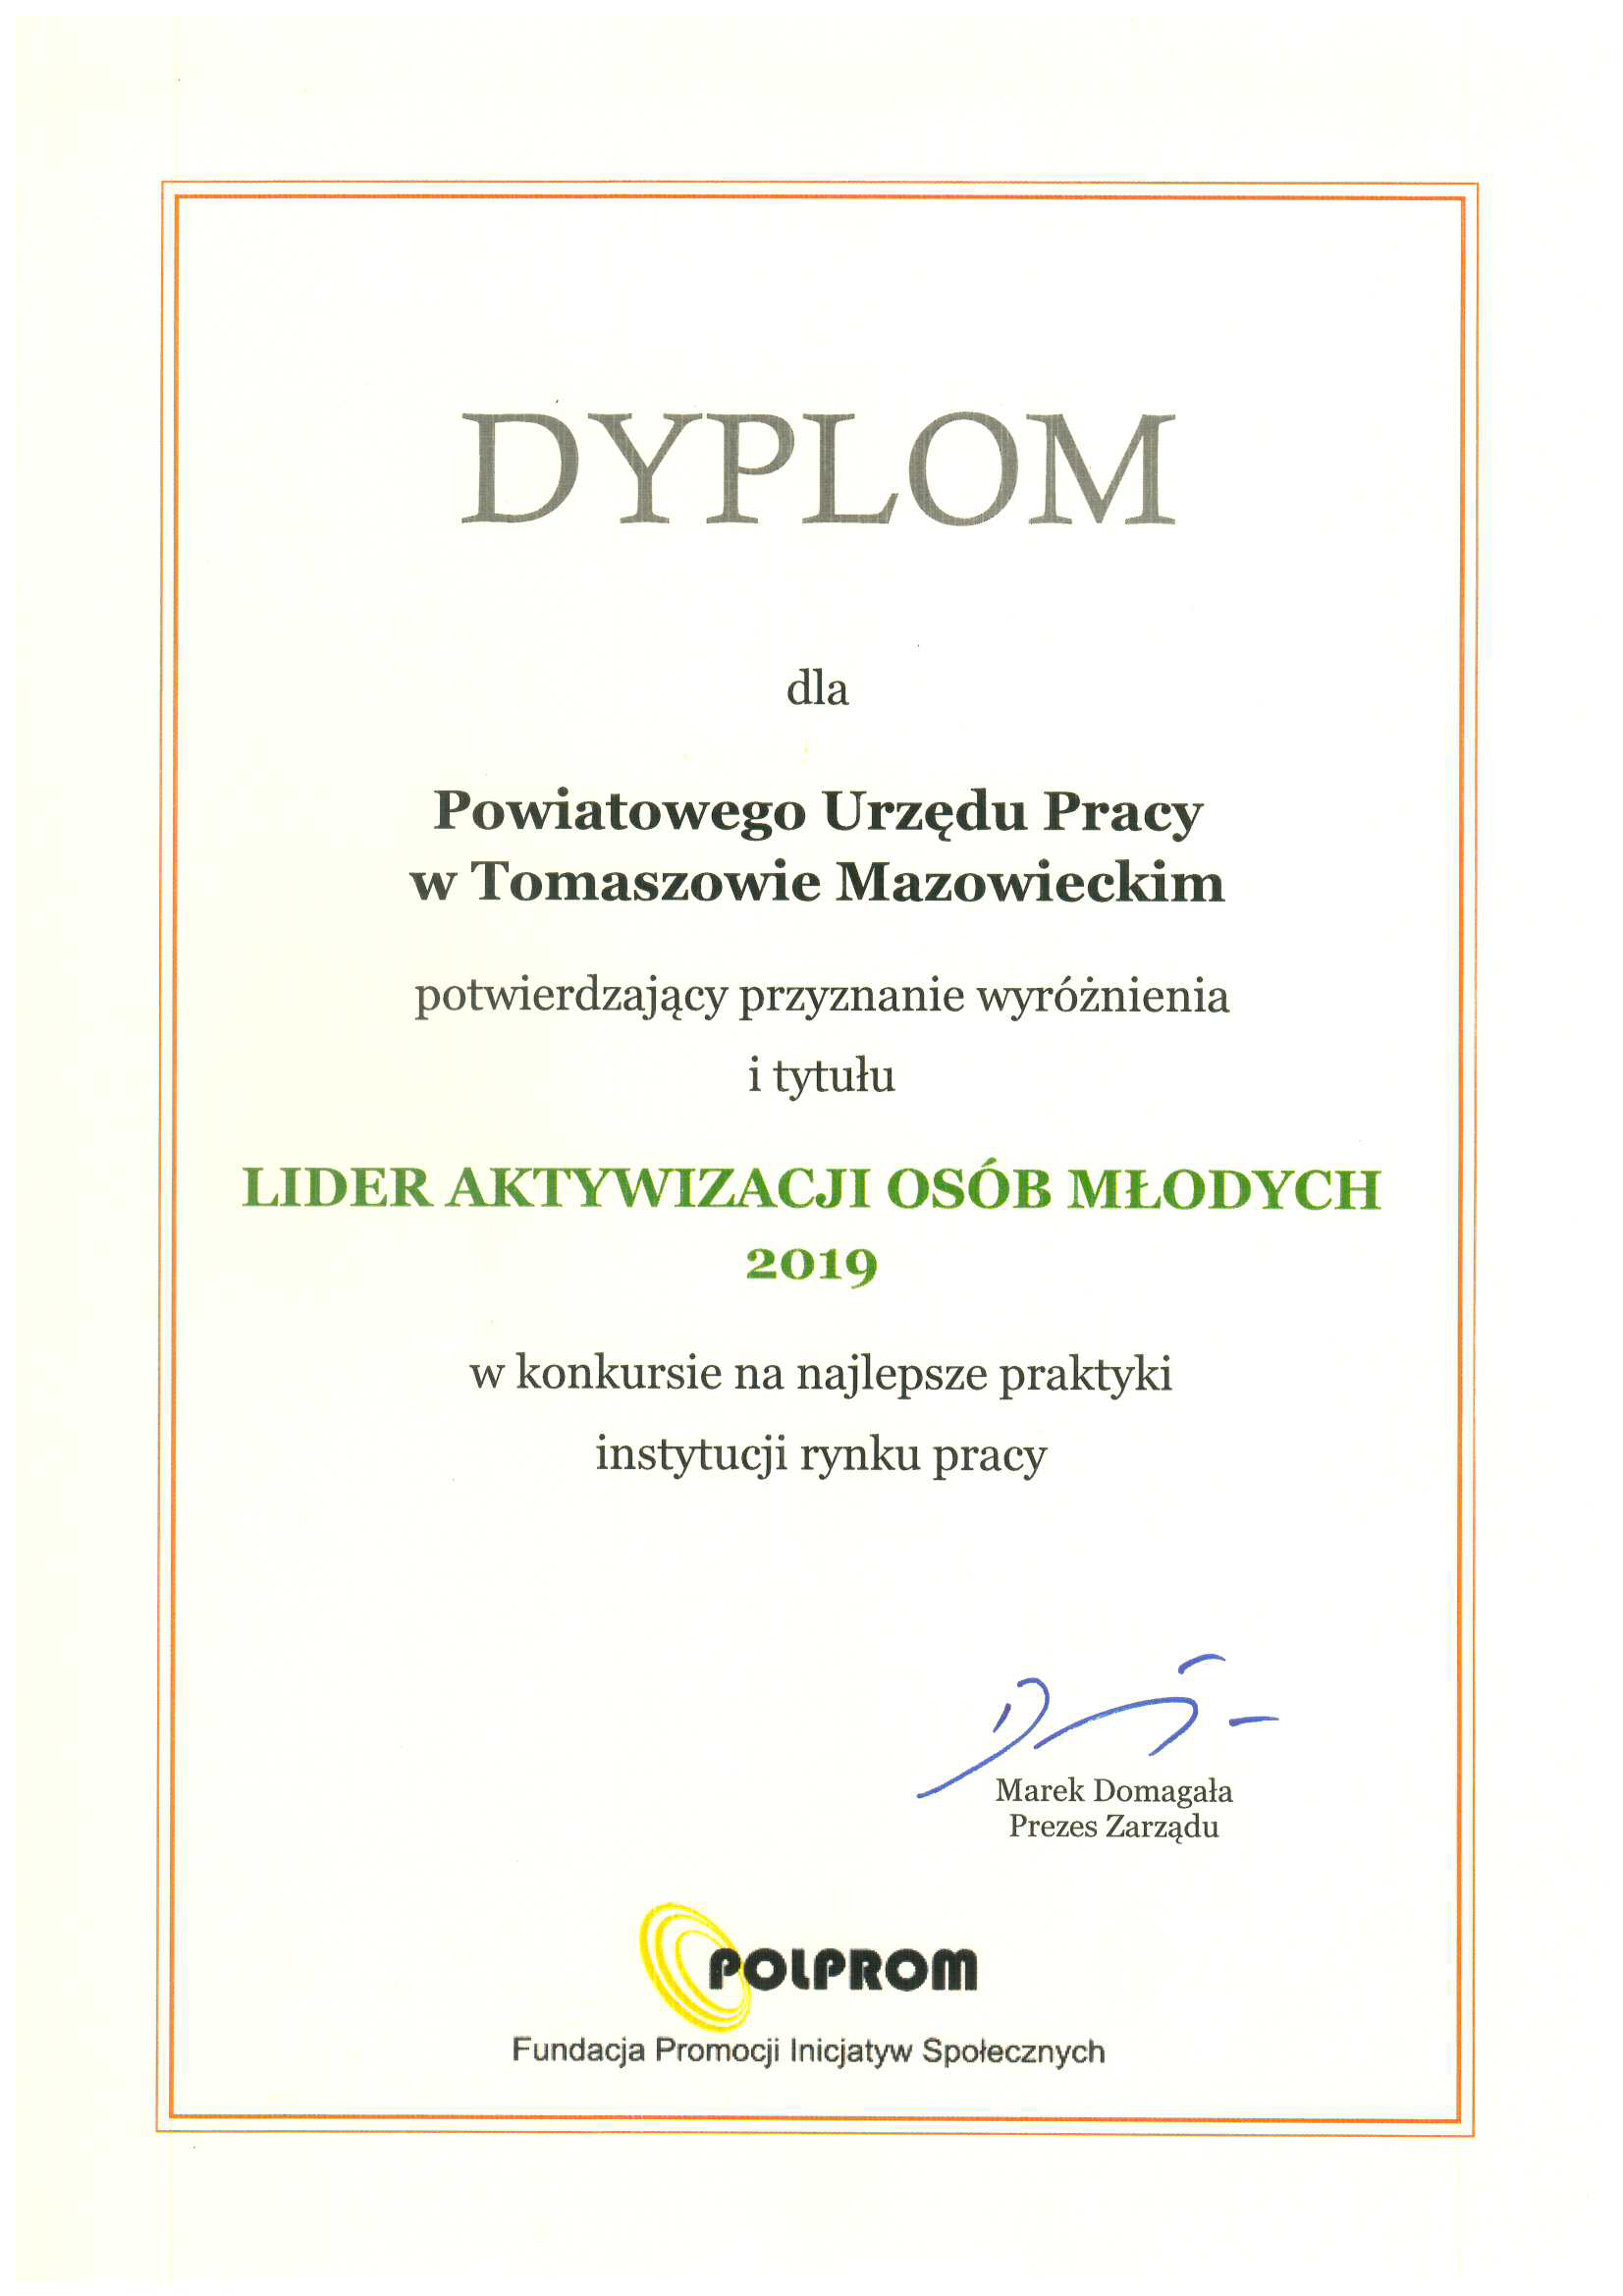 Powiatowy Urząd Pracy w Tomaszowie Mazowieckim otrzymał dyplom potwierdzający przyznanie wyróżnienia i tytułu lidera aktywizacji osób młodych 2019 w konkursie na najlepsze praktyki instytucji rynku pracy.